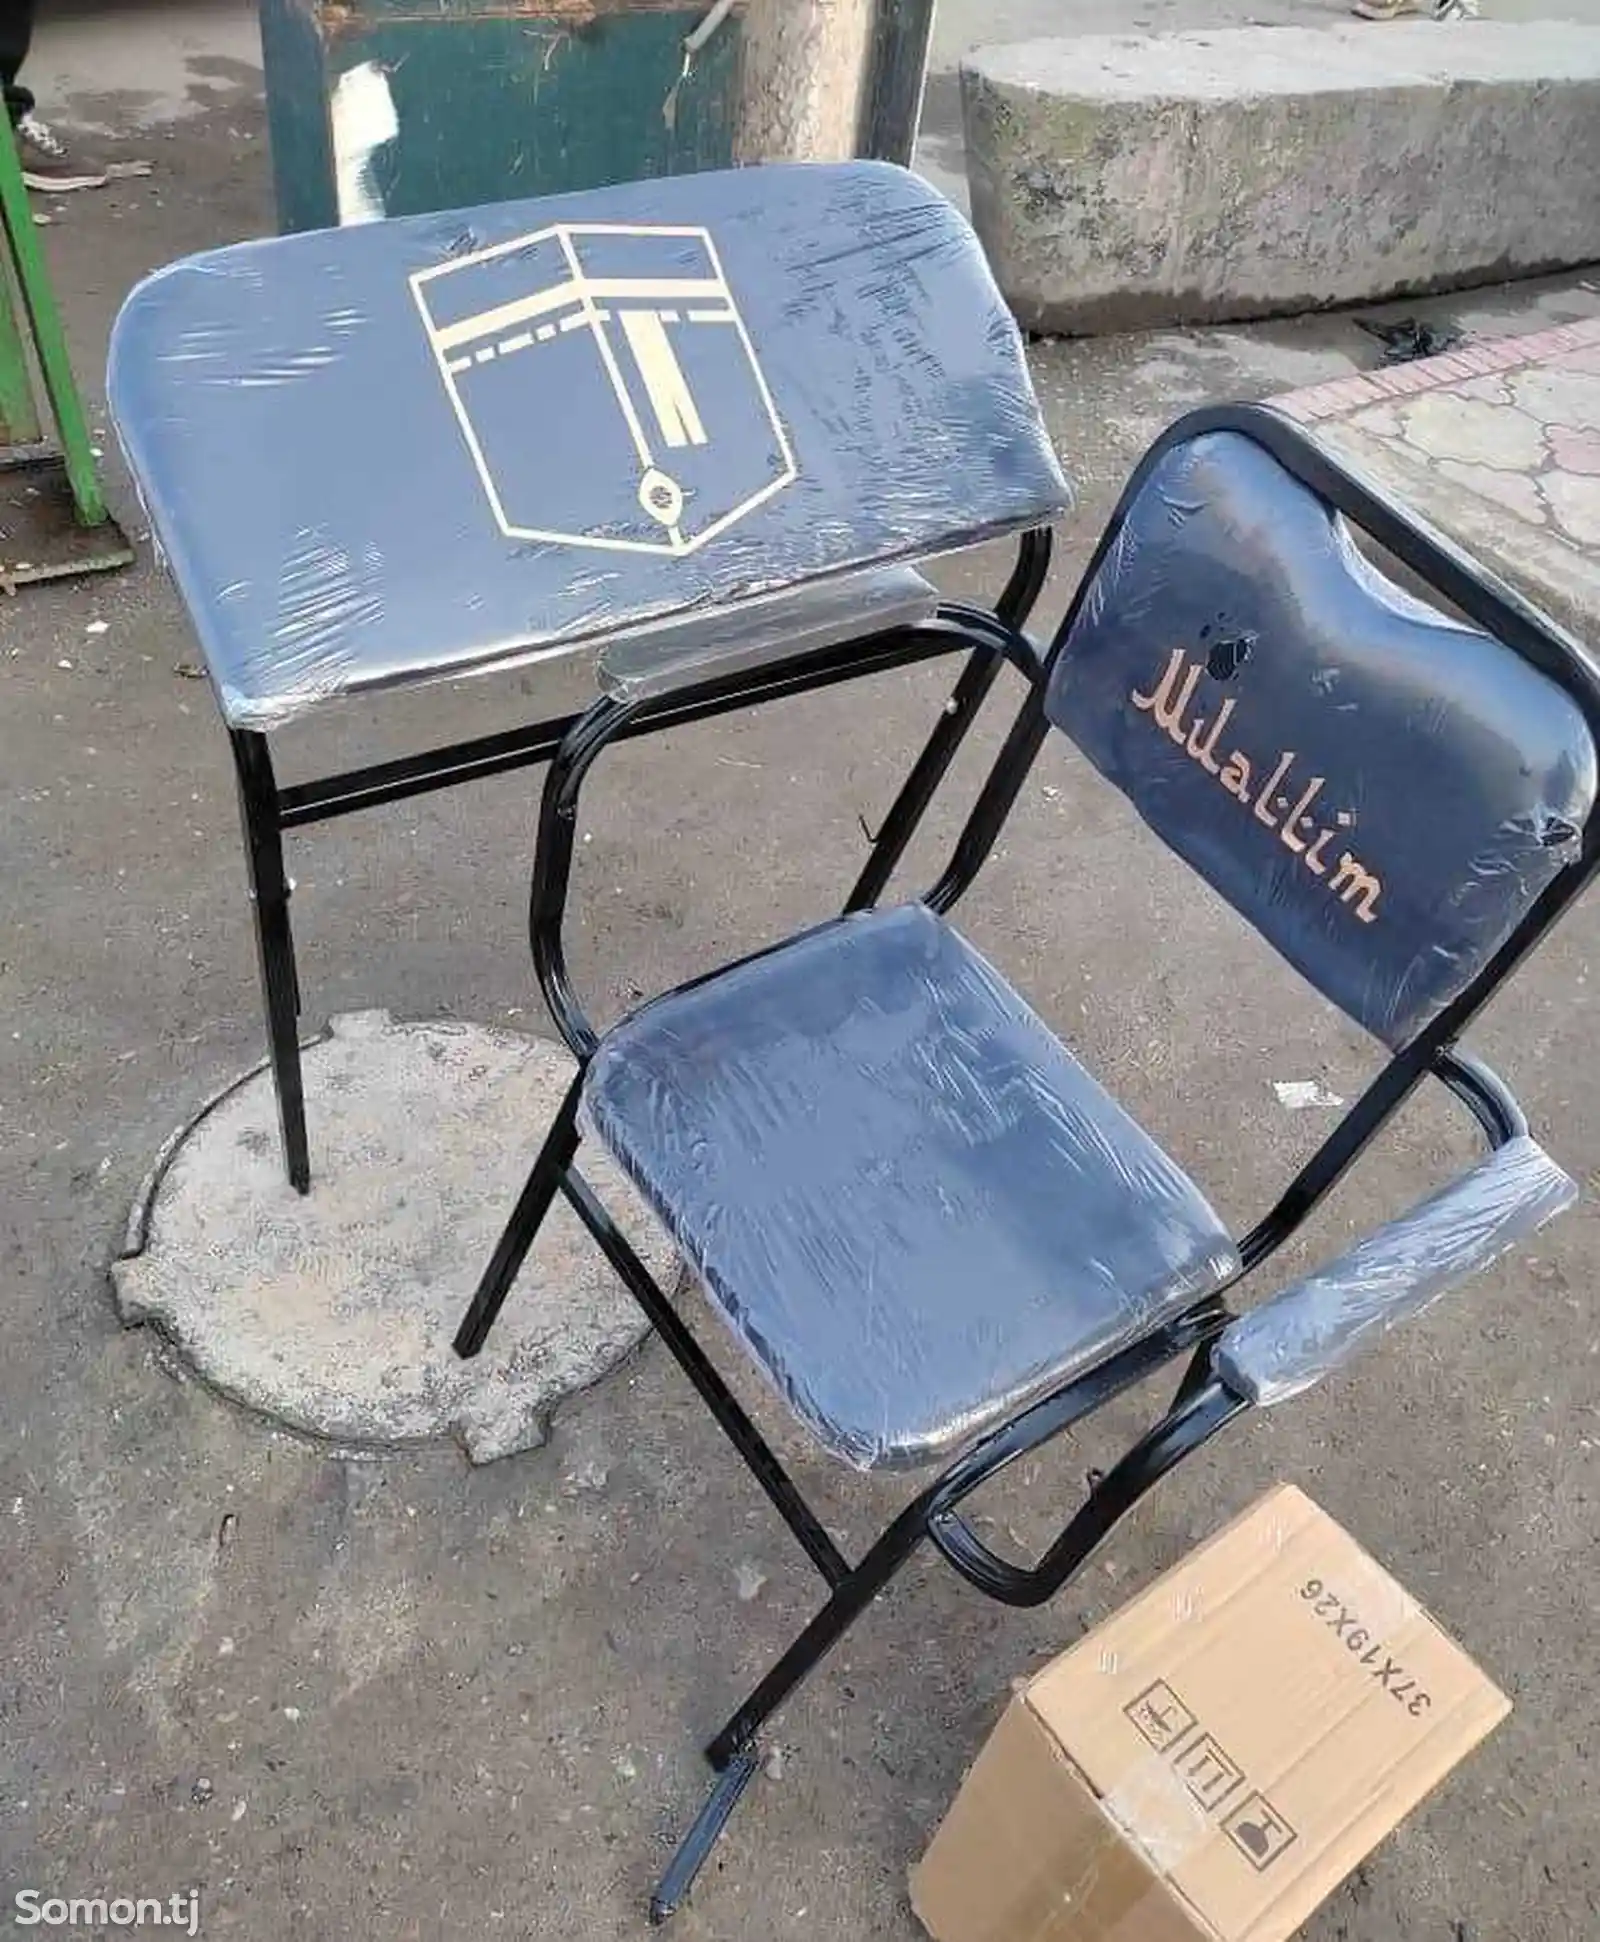 Стол и стул барои намоз